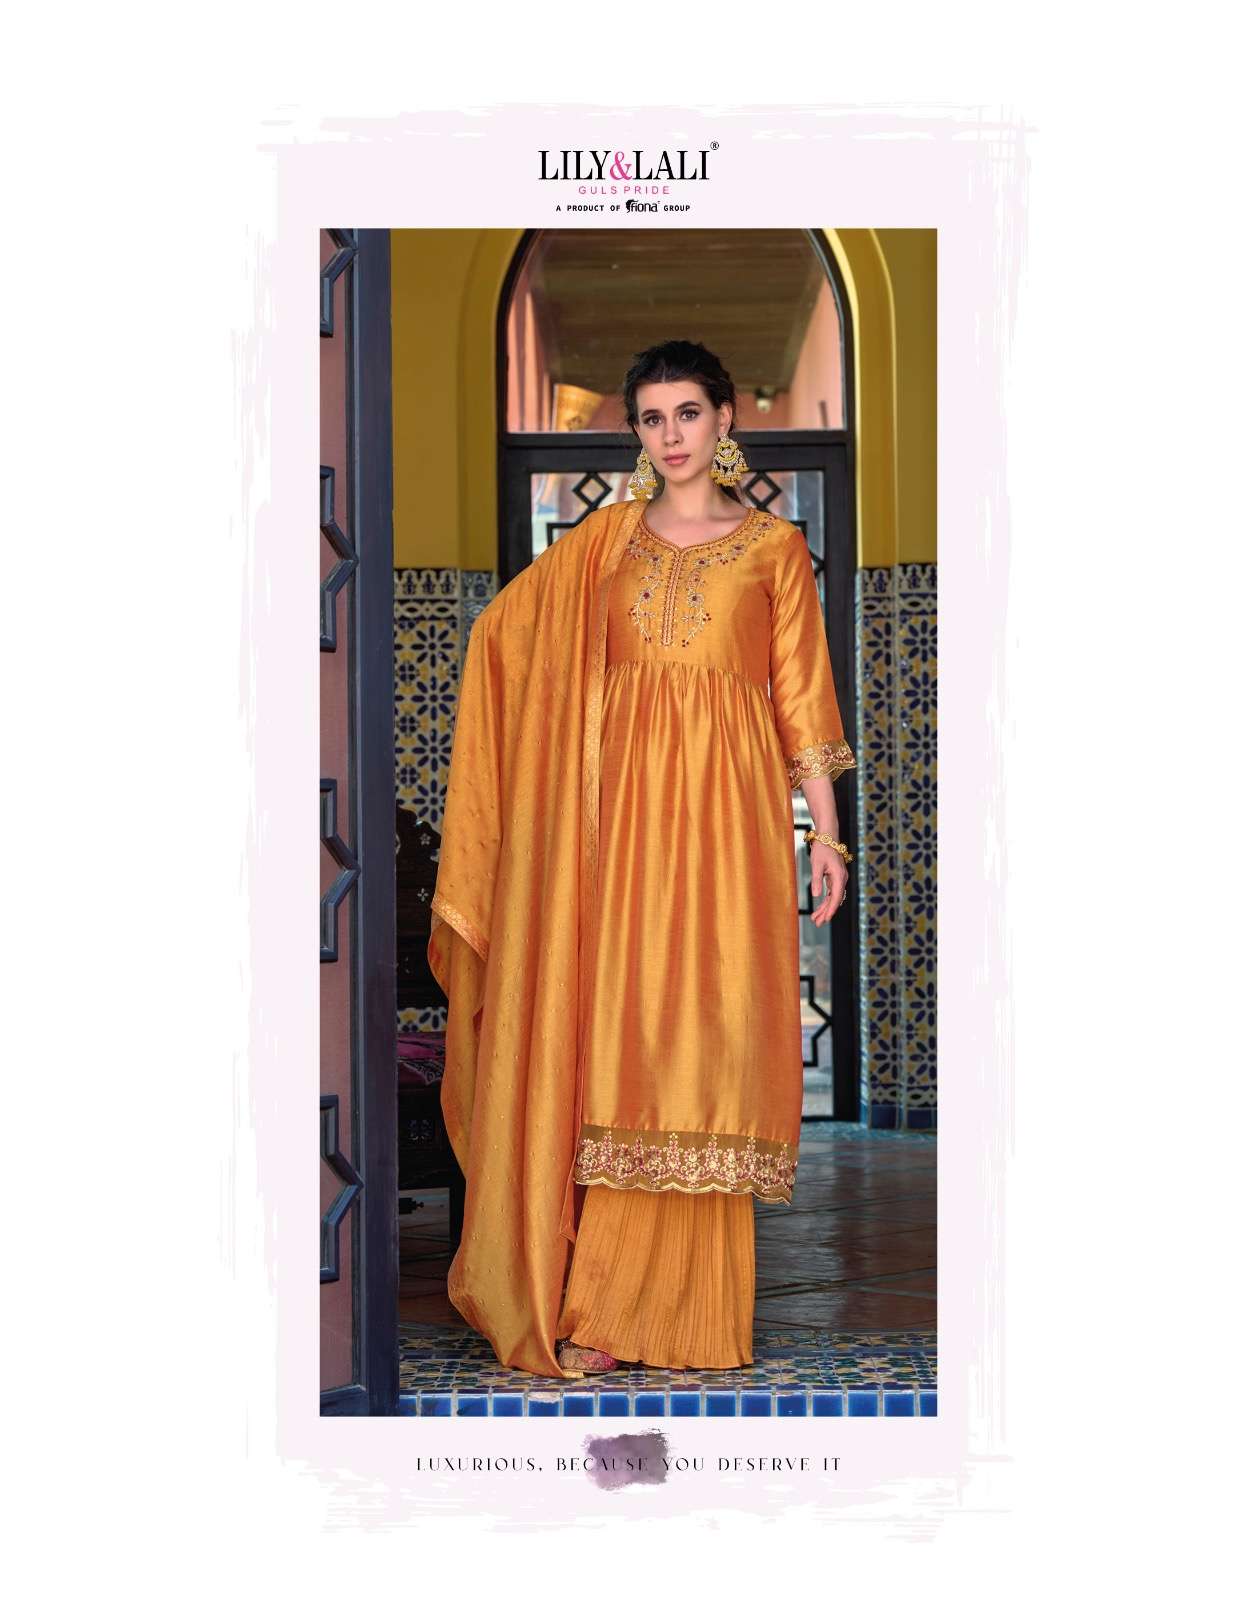 lily and lali masakali 11001-11006 series exclusive designer kurtis catalogue manufacturer surat 